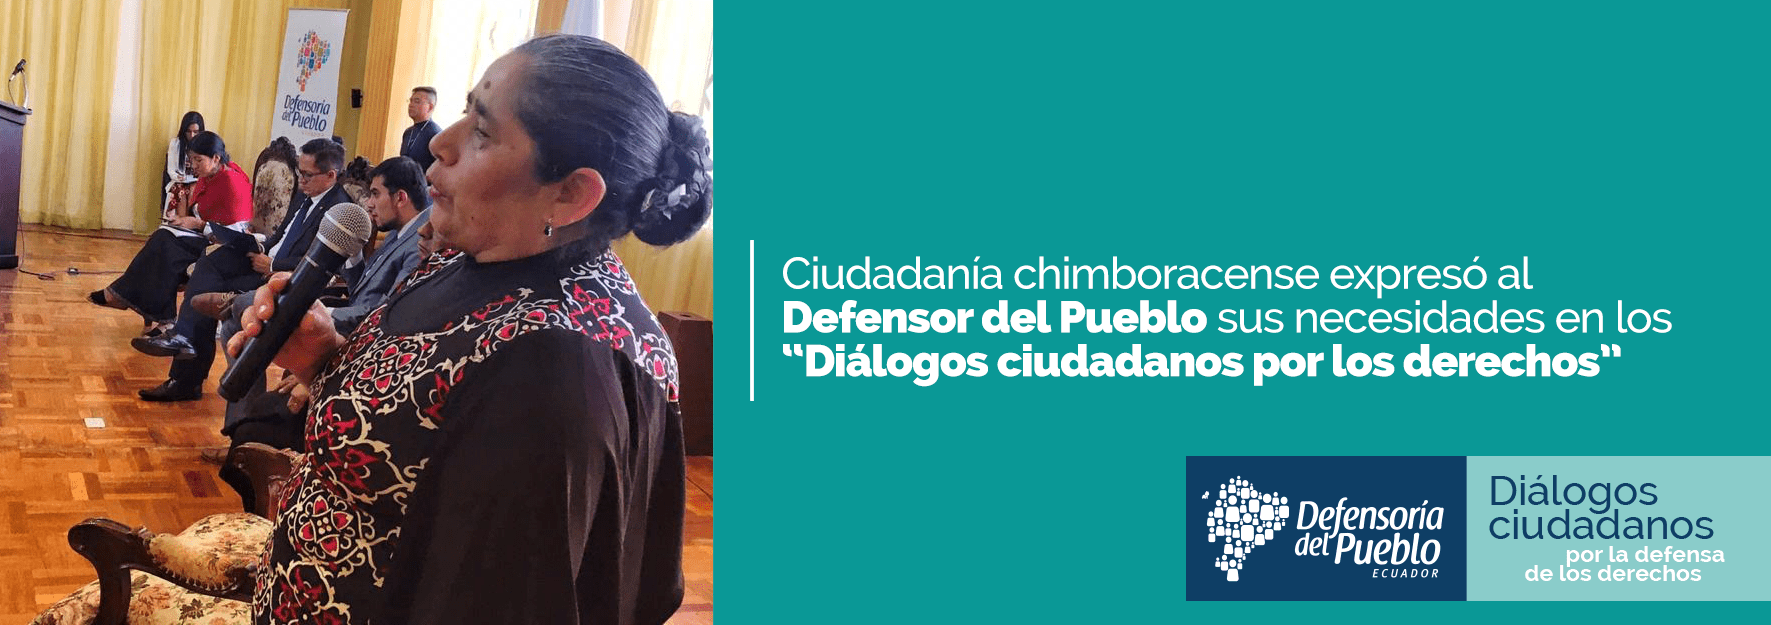 dialogos ciudadanos riobamba